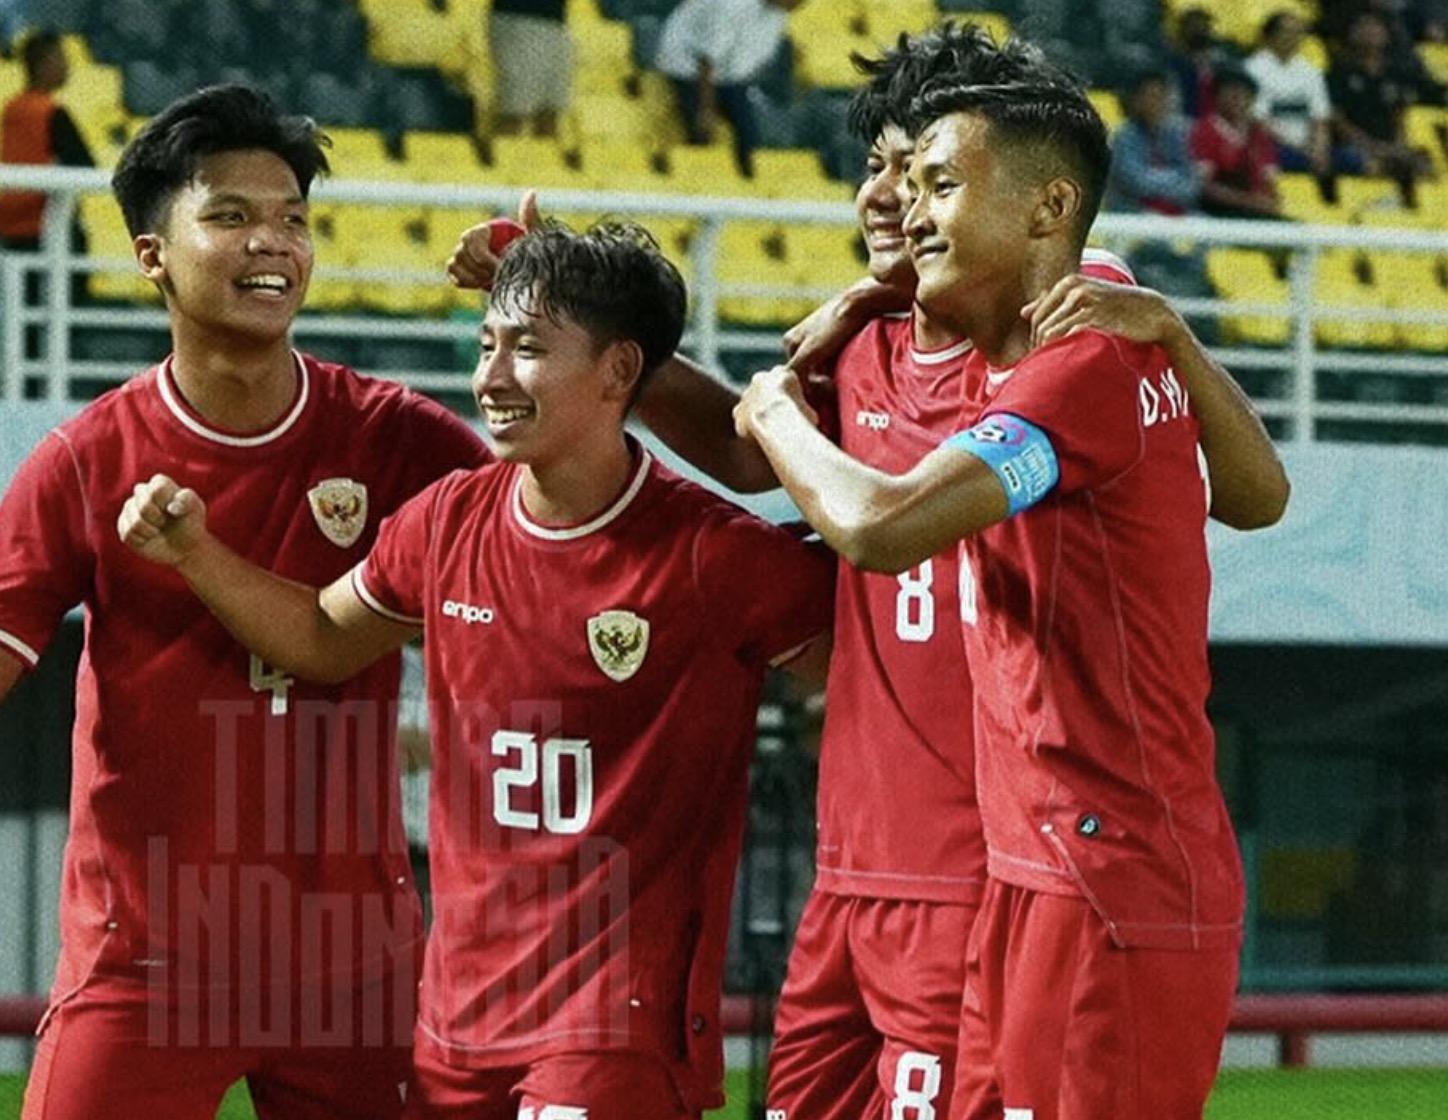 Cầu thủ gốc Hà Lan ghi bàn, U19 Indonesia thị uy sức mạnh